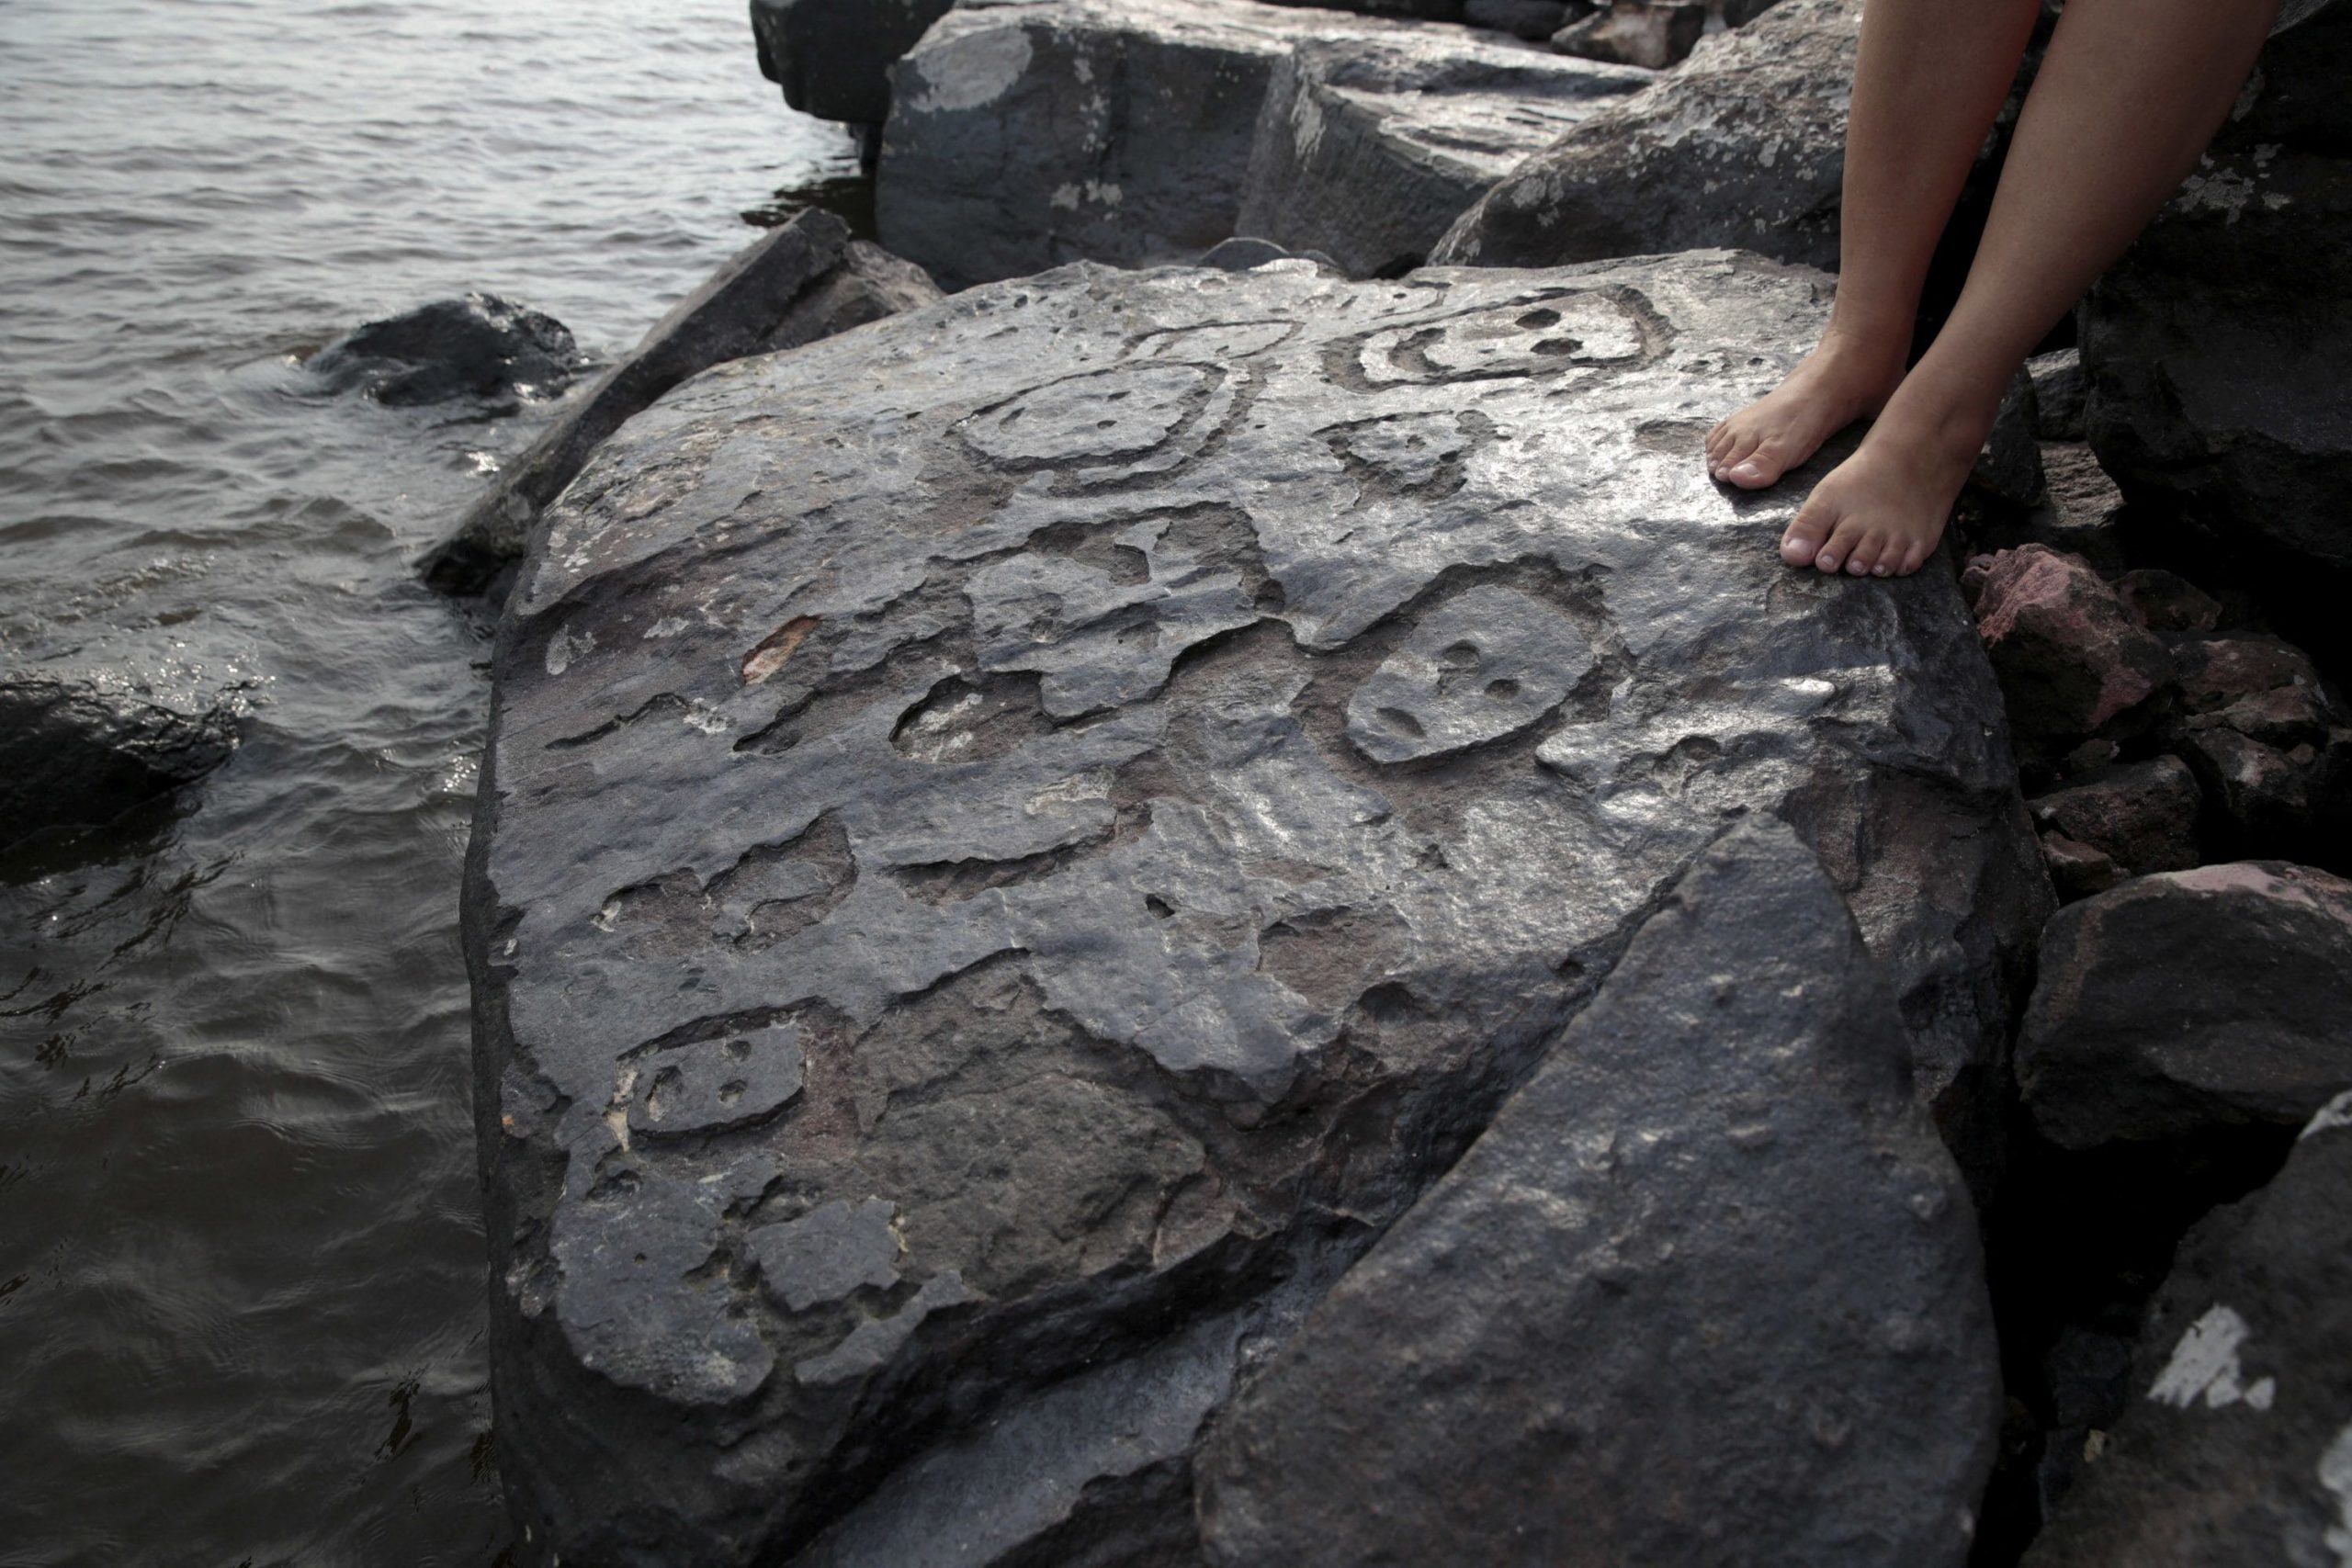 Amazon nehrindeki kuraklık 2000 yıl önce kayalara oyulmuş insan yüzlerini ortaya çıkardı